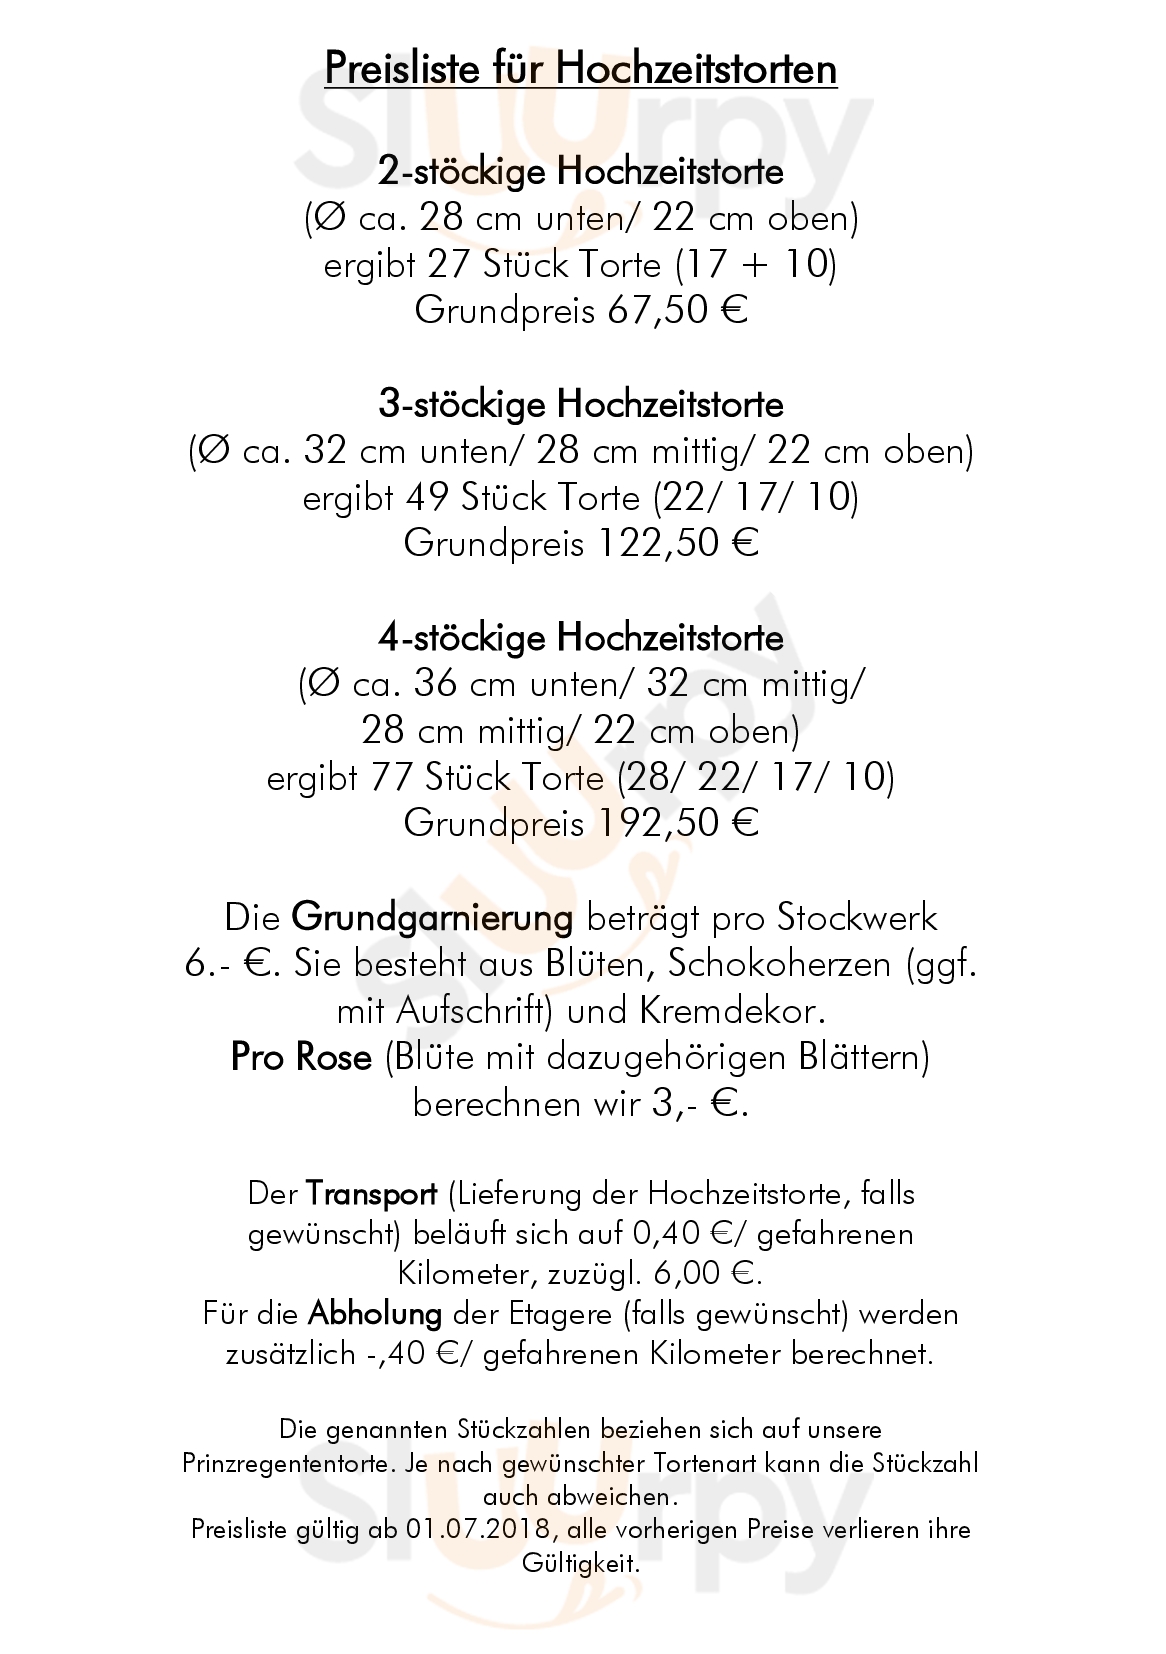 Konditorei-café Kohlhund  -  Immenstadt Im Allgäu Immenstadt im Allgäu Menu - 1